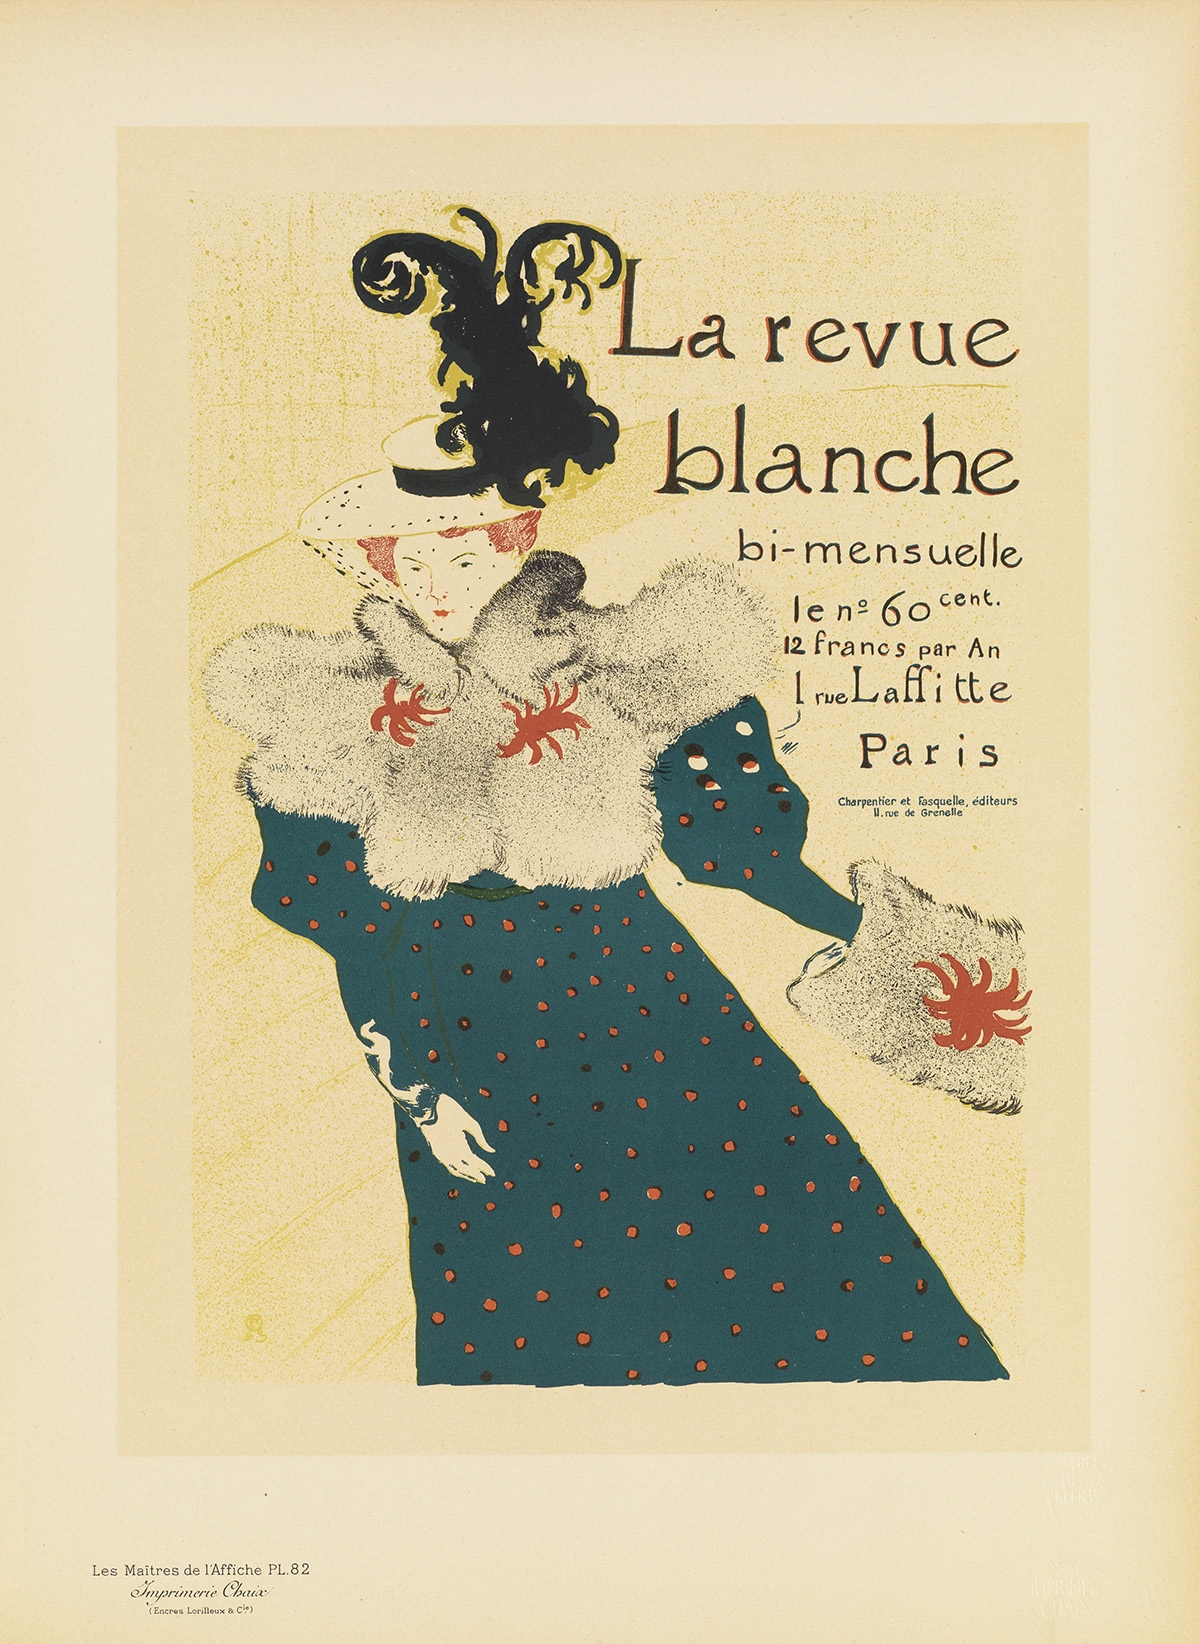 LA REVUE BLANCHE. Maîtres de l'Affiche pl. 82 by Henri de Toulouse-Lautrec, 1897